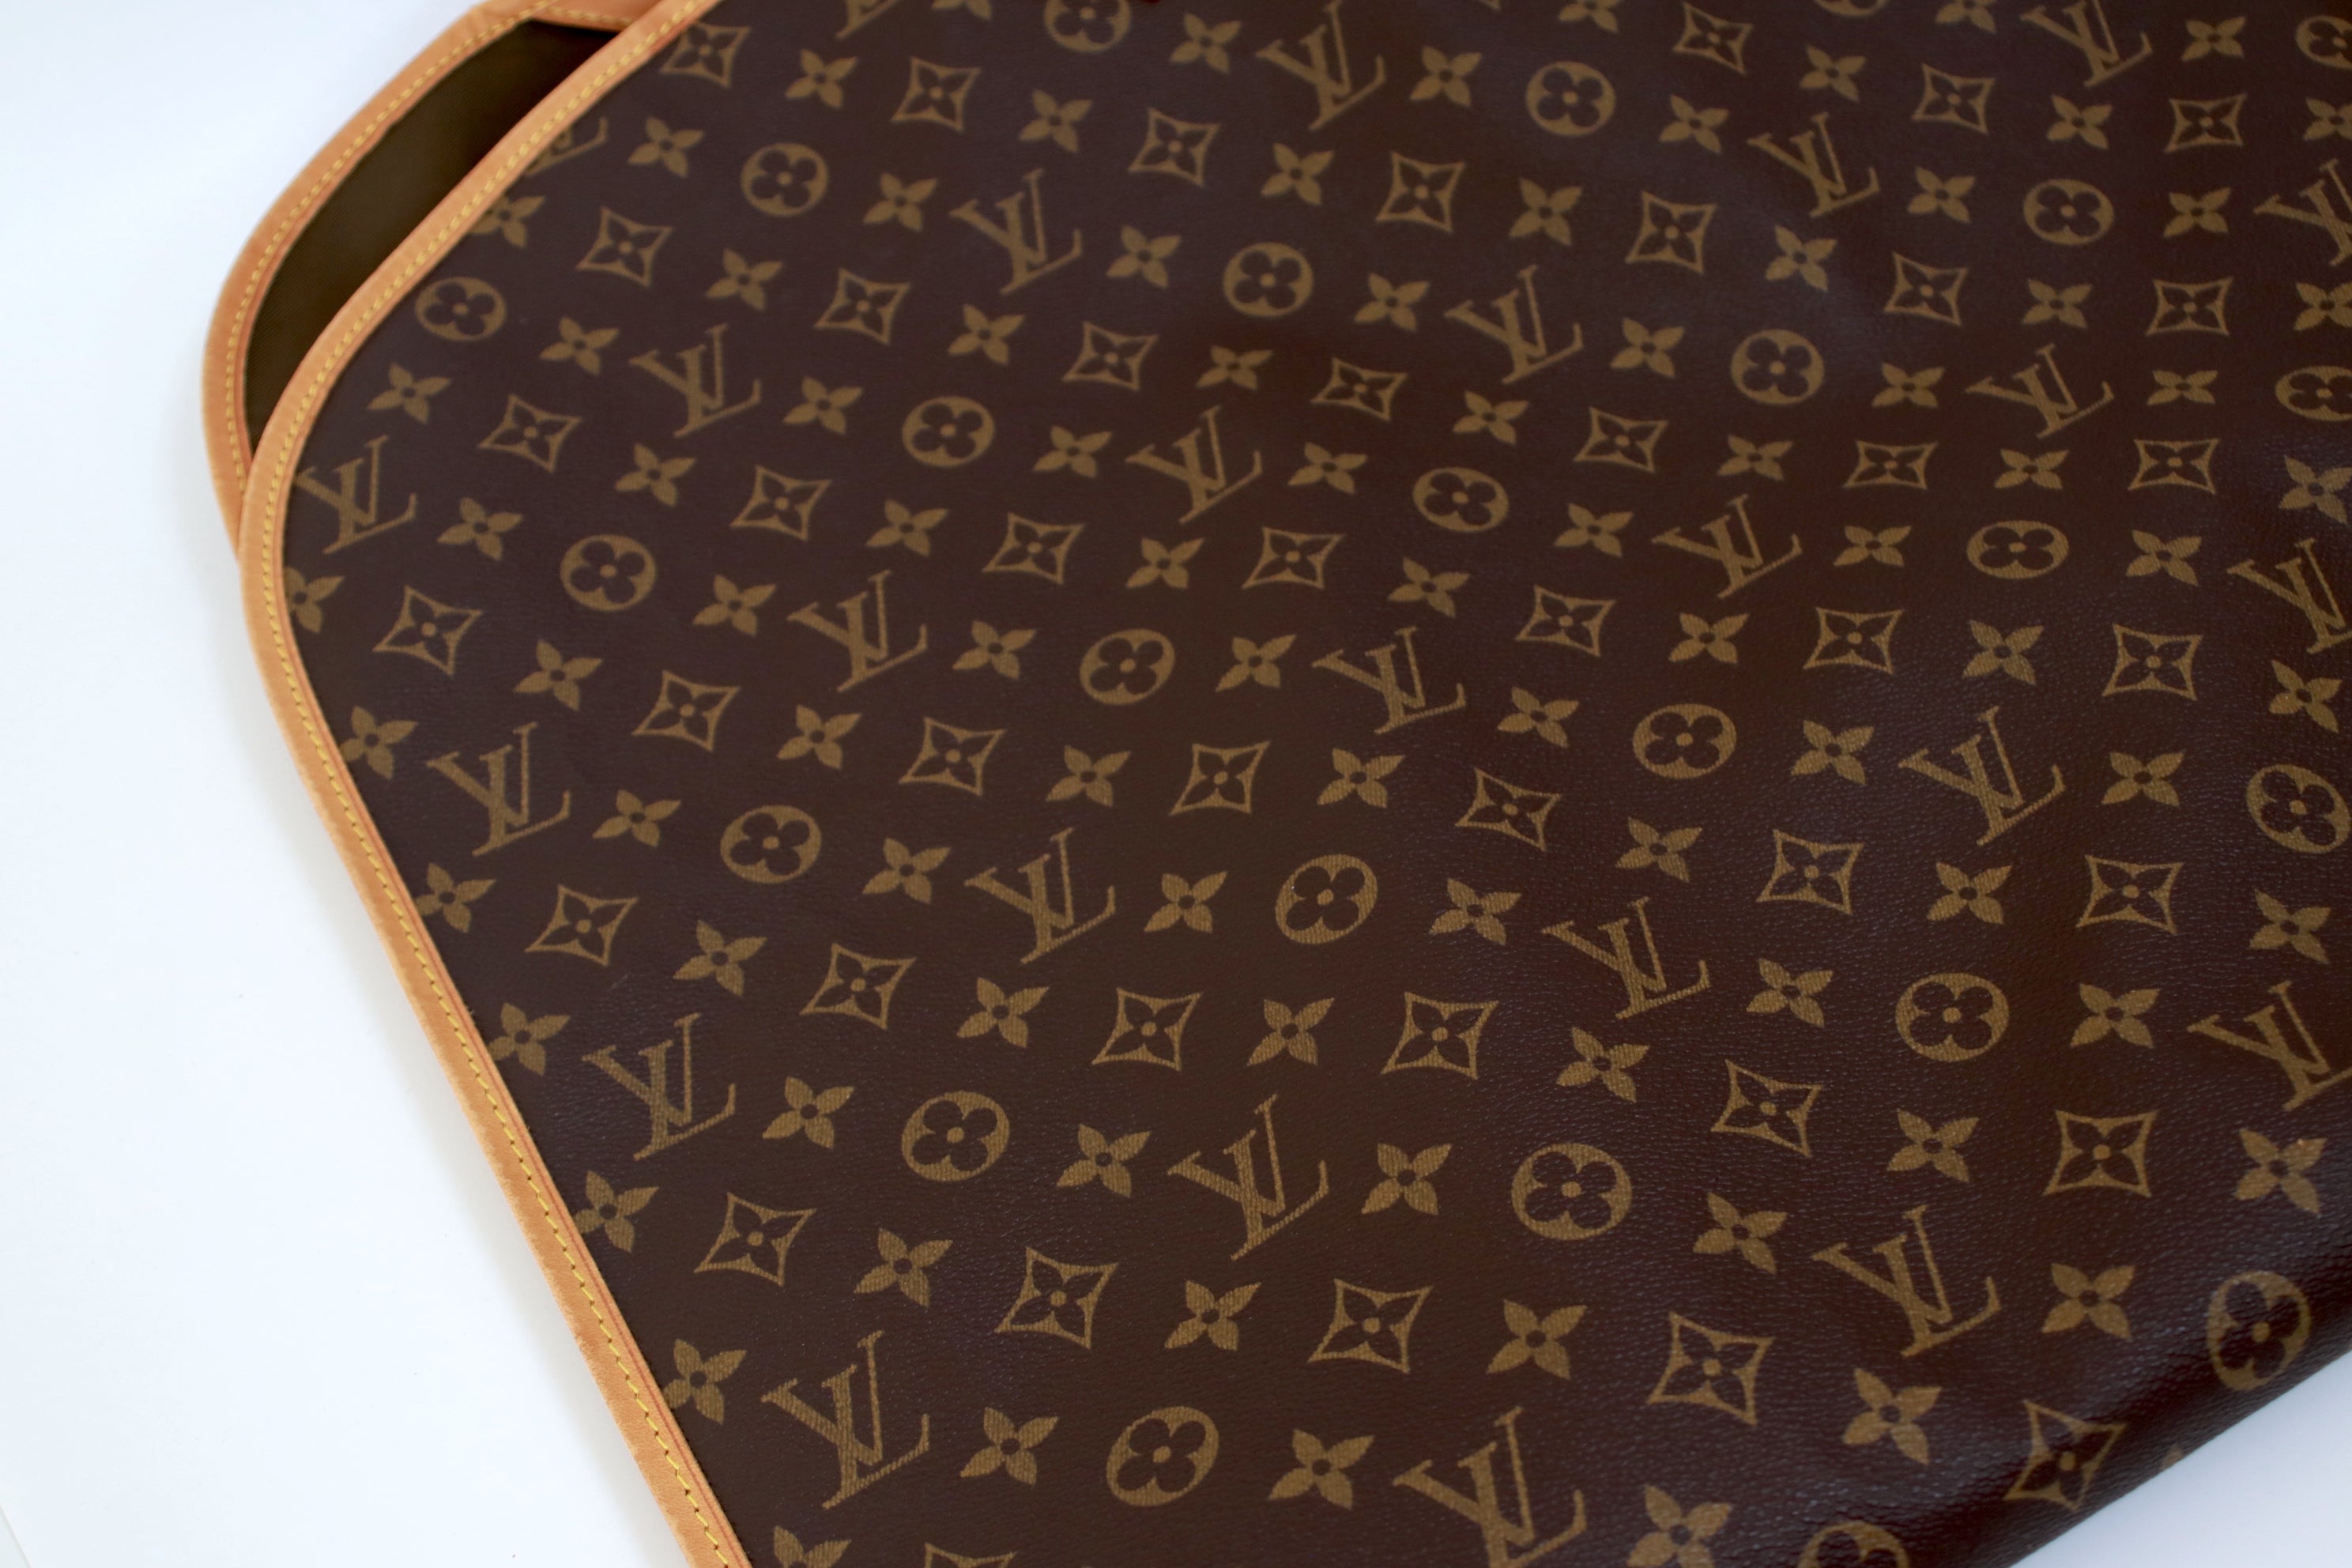 Louis Vuitton Housse Porte Habits Garment Case Used (6970)